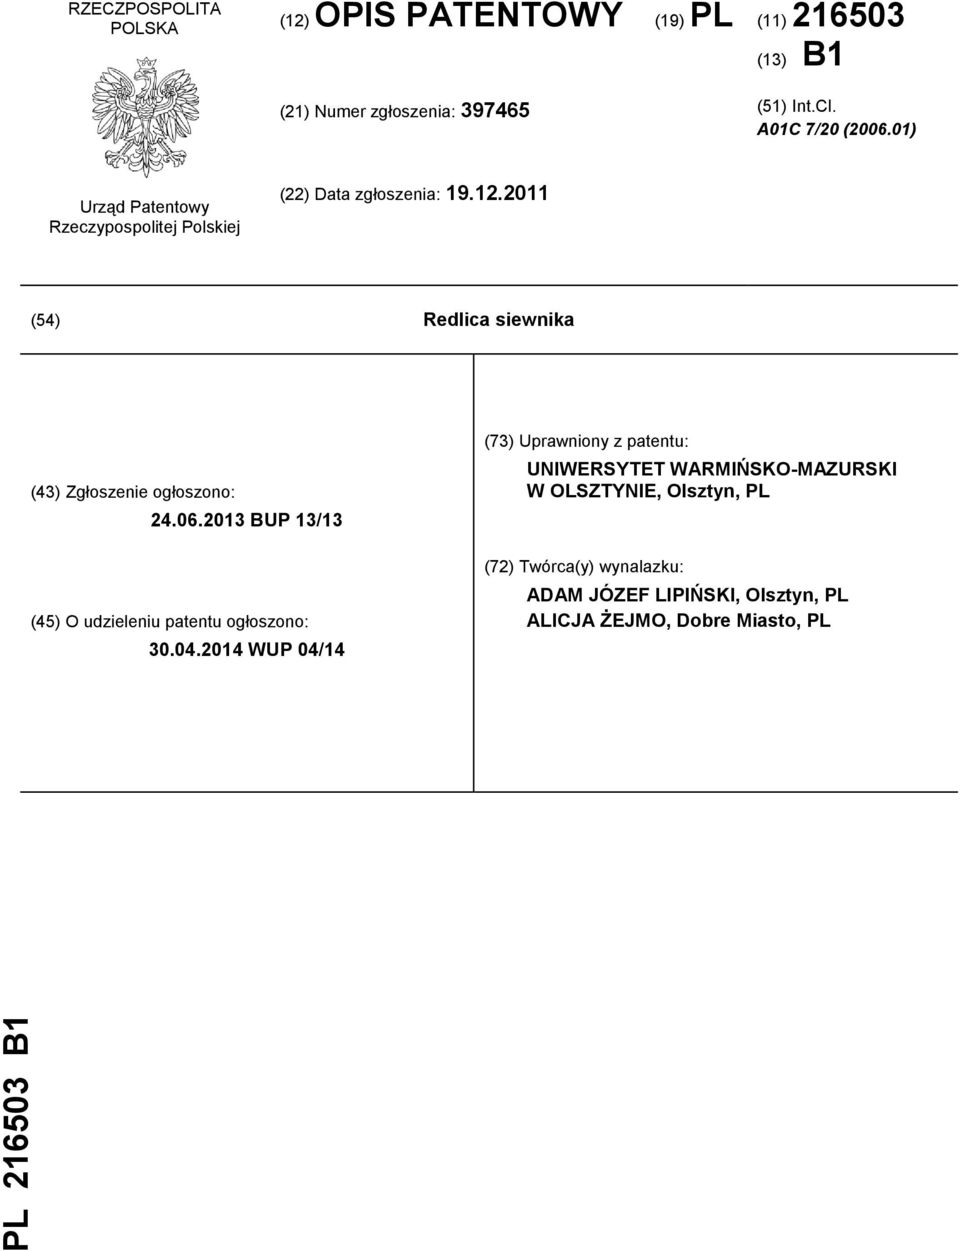 2011 (54) Redlica siewnika (43) Zgłoszenie ogłoszono: 24.06.2013 BUP 13/13 (45) O udzieleniu patentu ogłoszono: 30.04.